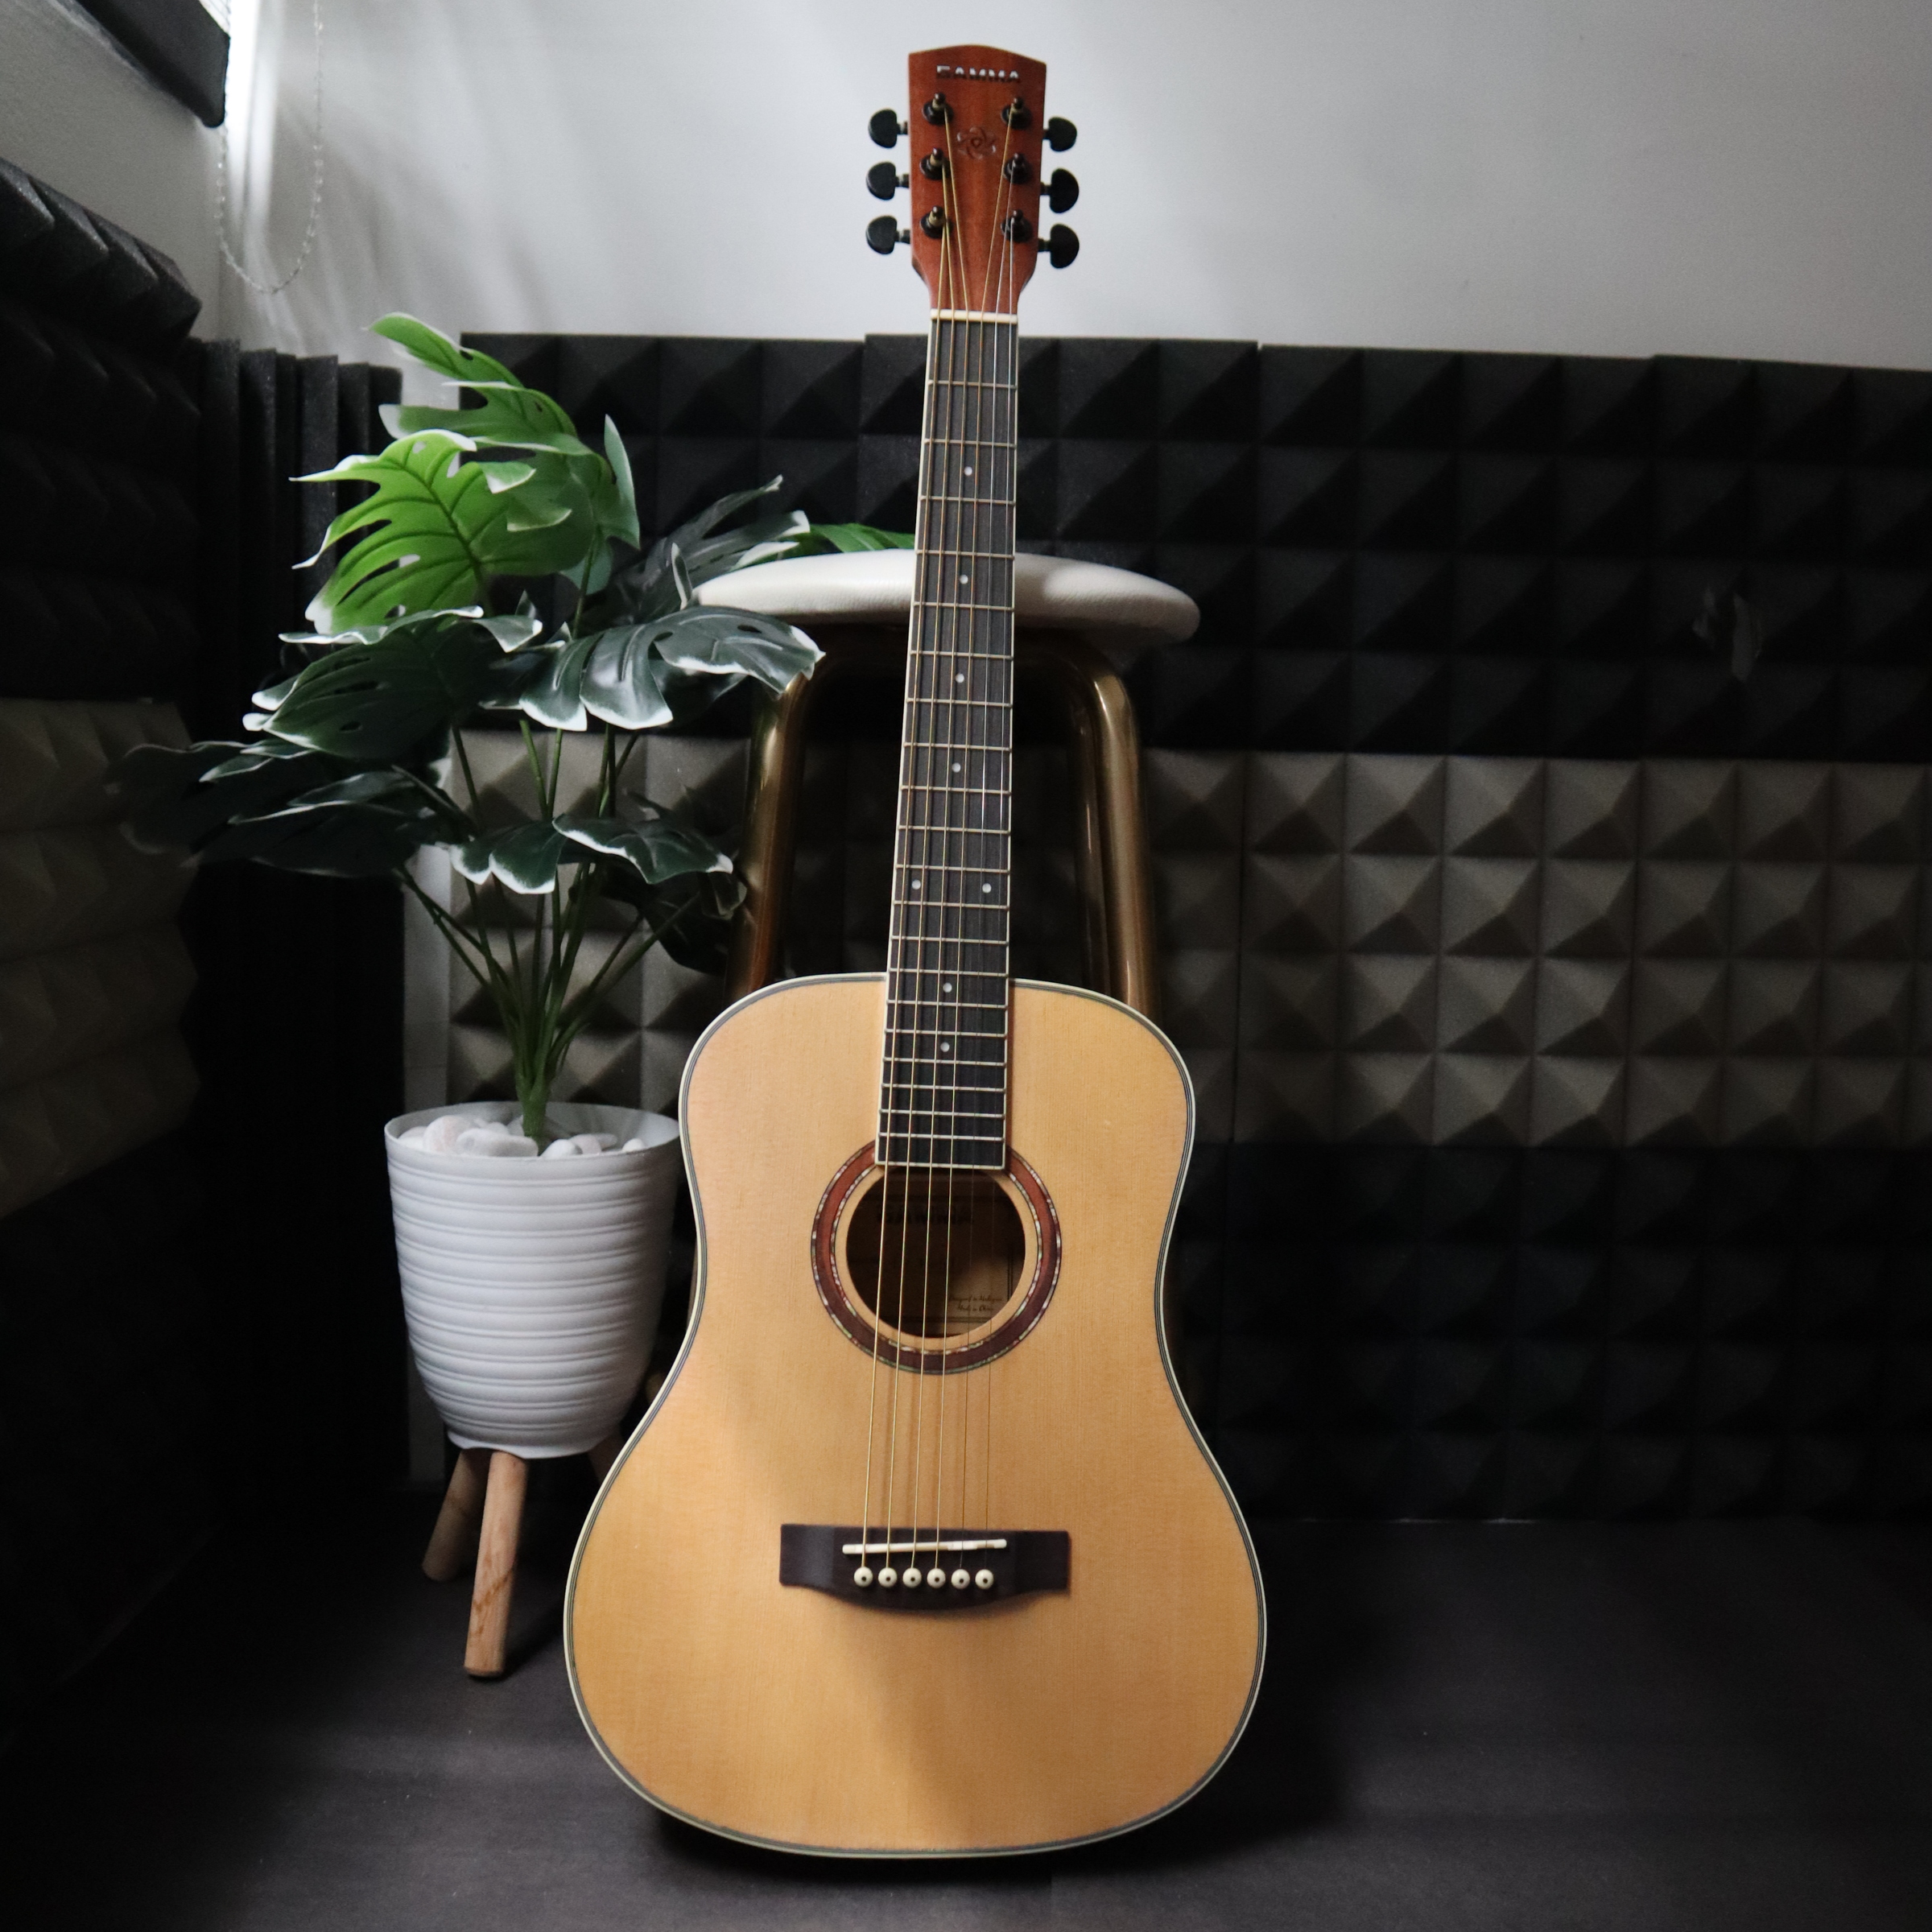 GAMMA Series 40 Slimbody Acoustic Guitar 4band EQ - Music Instruments for  sale in Ara Damansara, Selangor